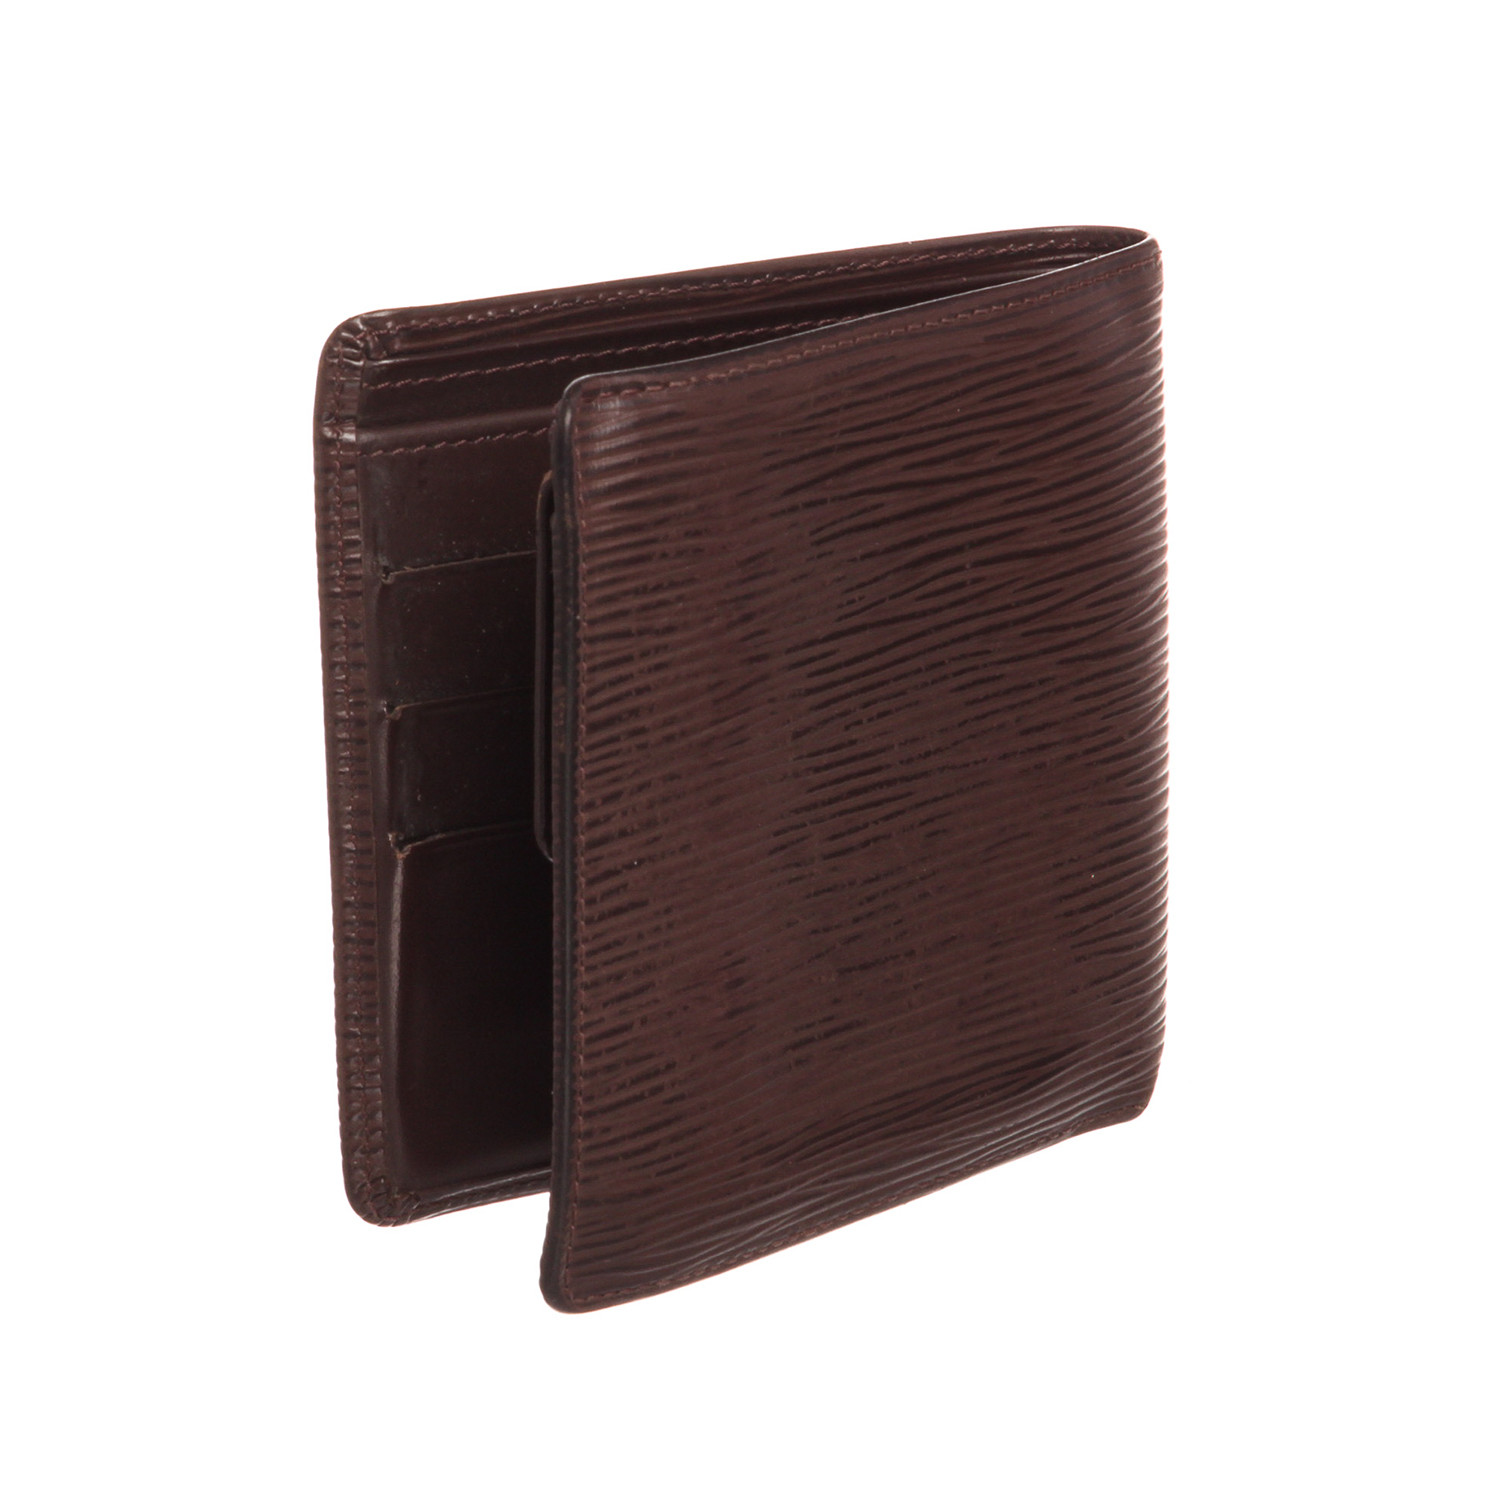 Louis Vuitton Brown Leather Wallet - Men - 1742908831